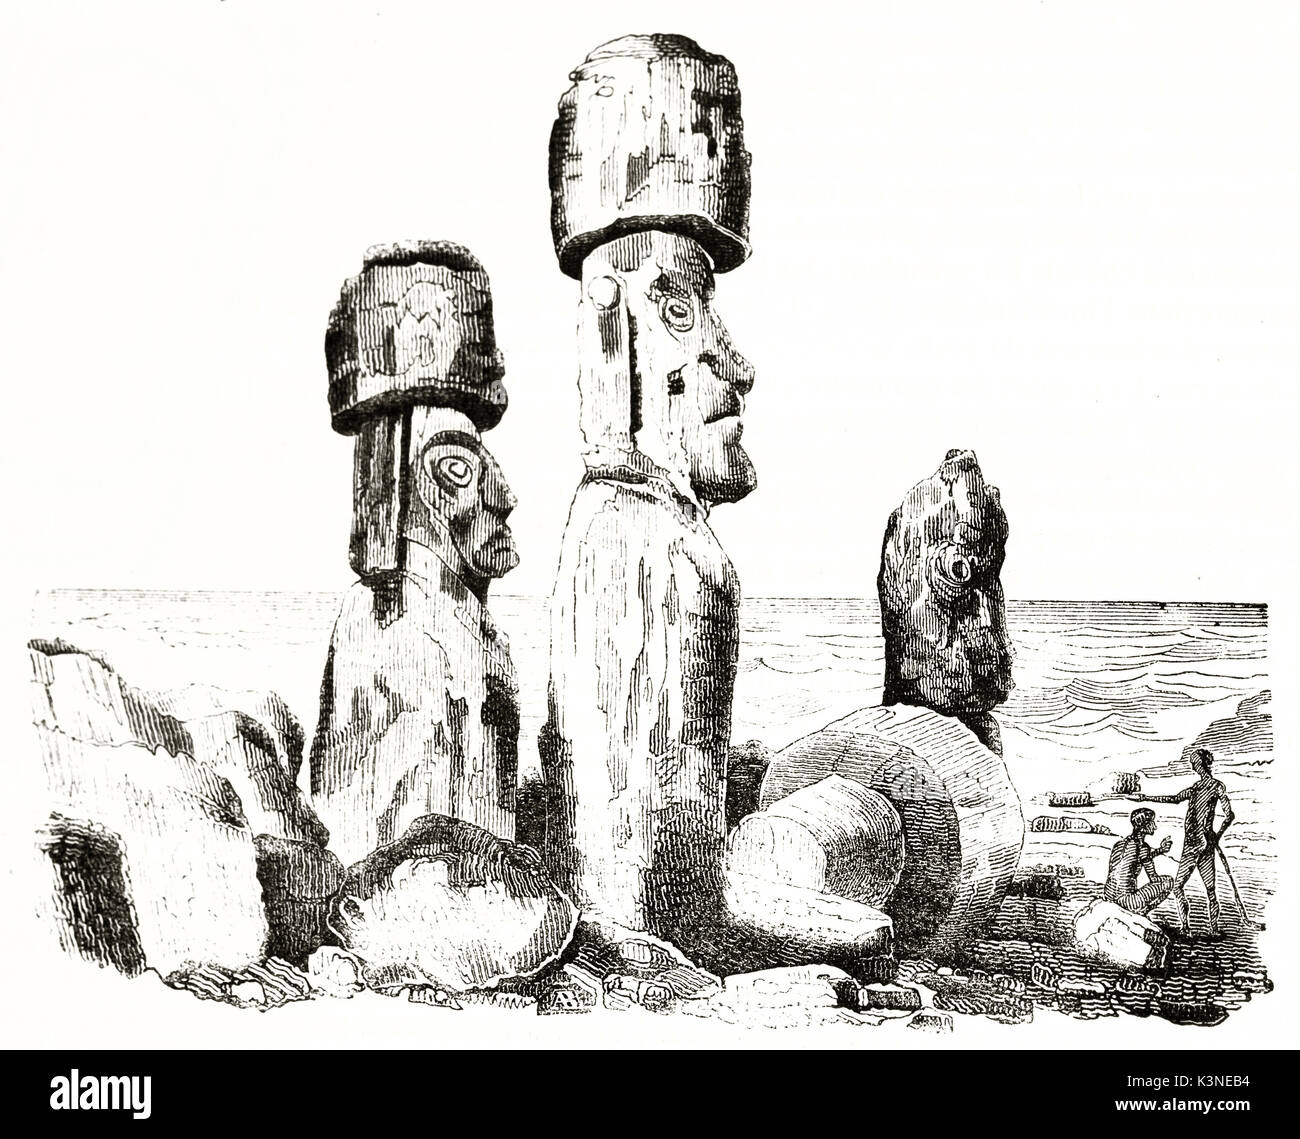 Große steinerne Statuen und kleine indigene vor Ihnen nahe zum Meer sitzt. Moai auf der Osterinsel. Von unbekannter Autor auf Magasin Pittoresque Paris 1839 veröffentlicht. Stockfoto